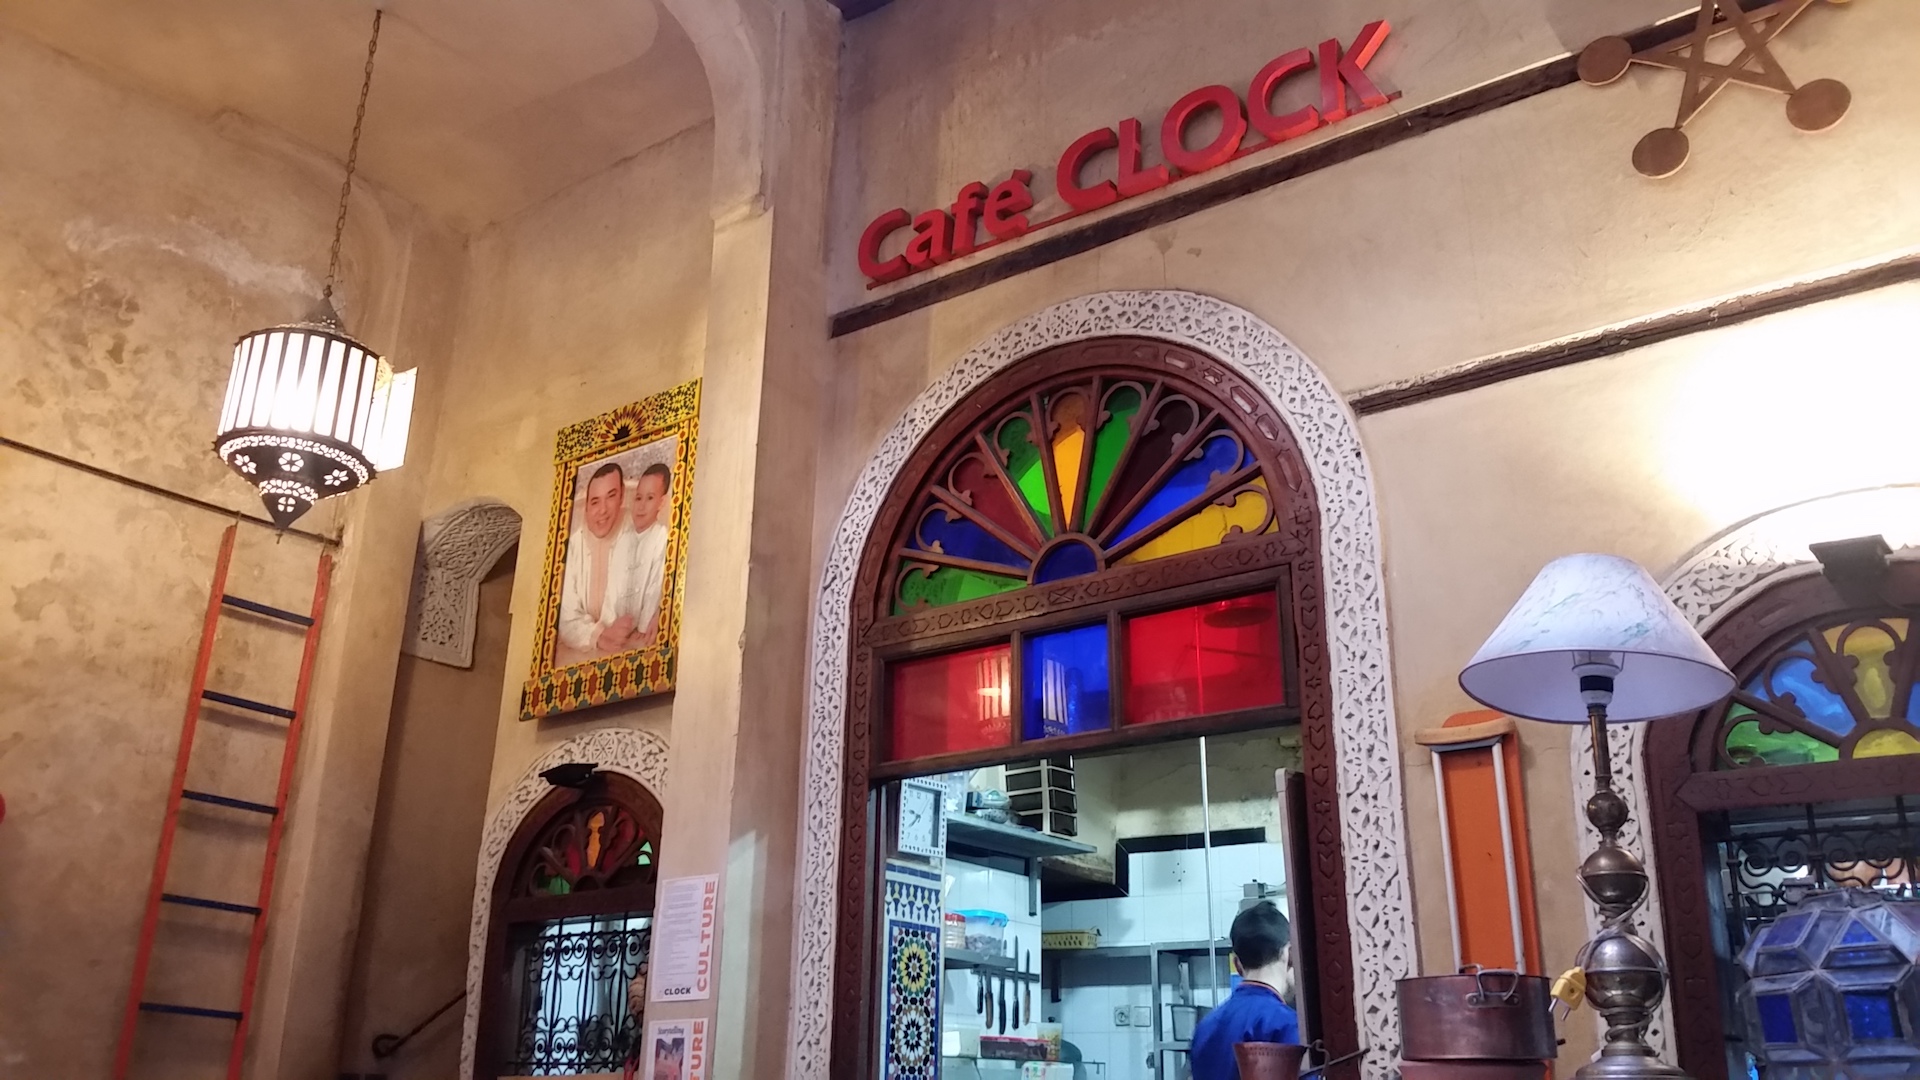 My Kind Of Spot-Café Clock, Fez, Morocco